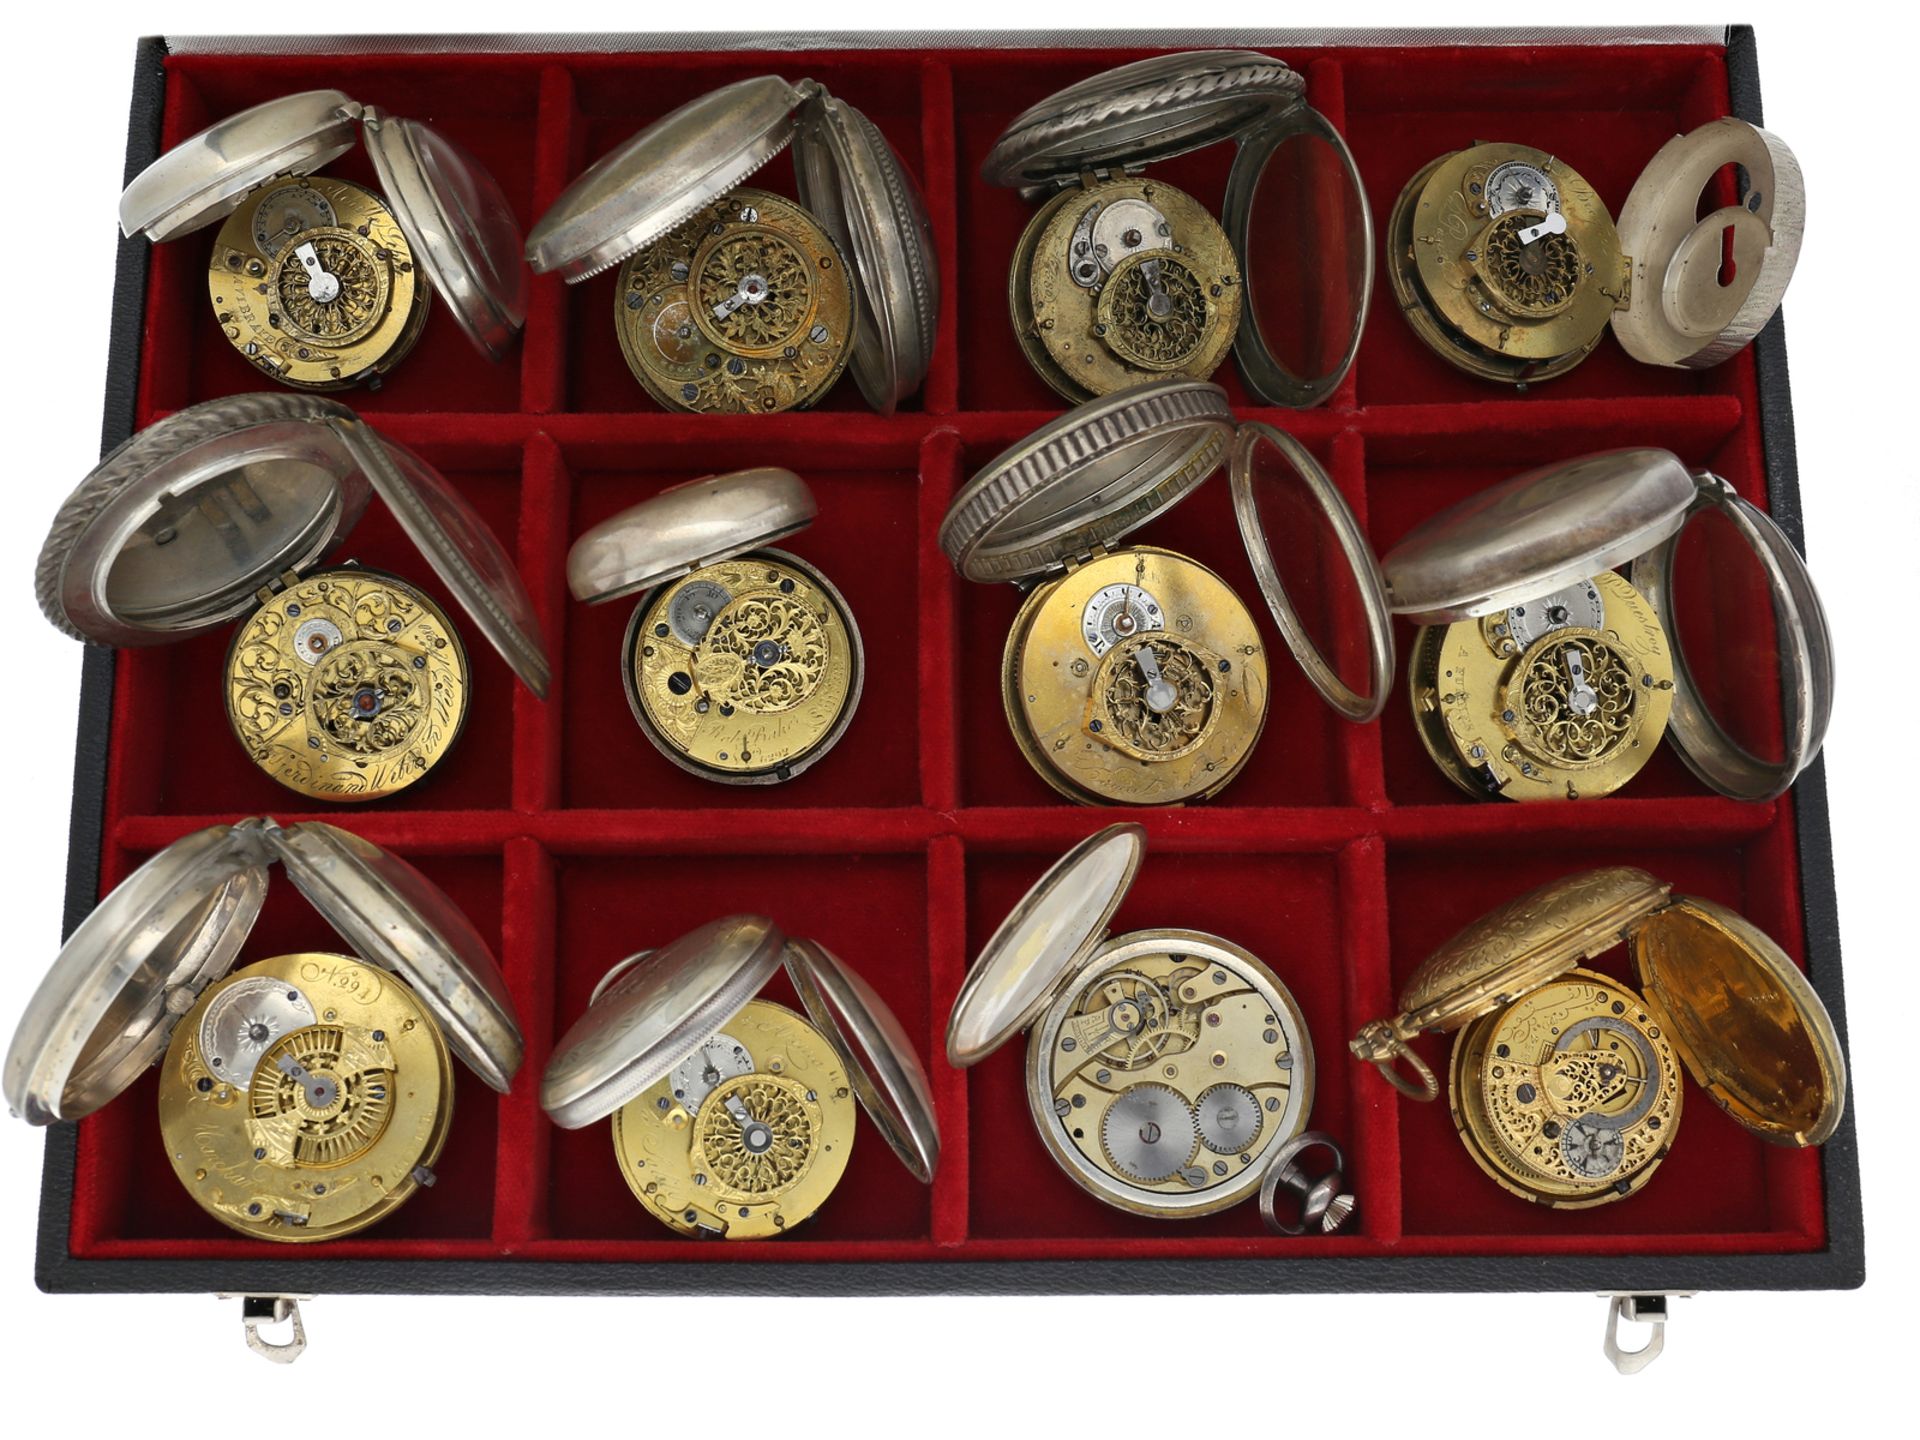 Interessantes Sammlung unterschiedlicher Taschenuhren, England, Frankreich, Schweiz - Image 6 of 6